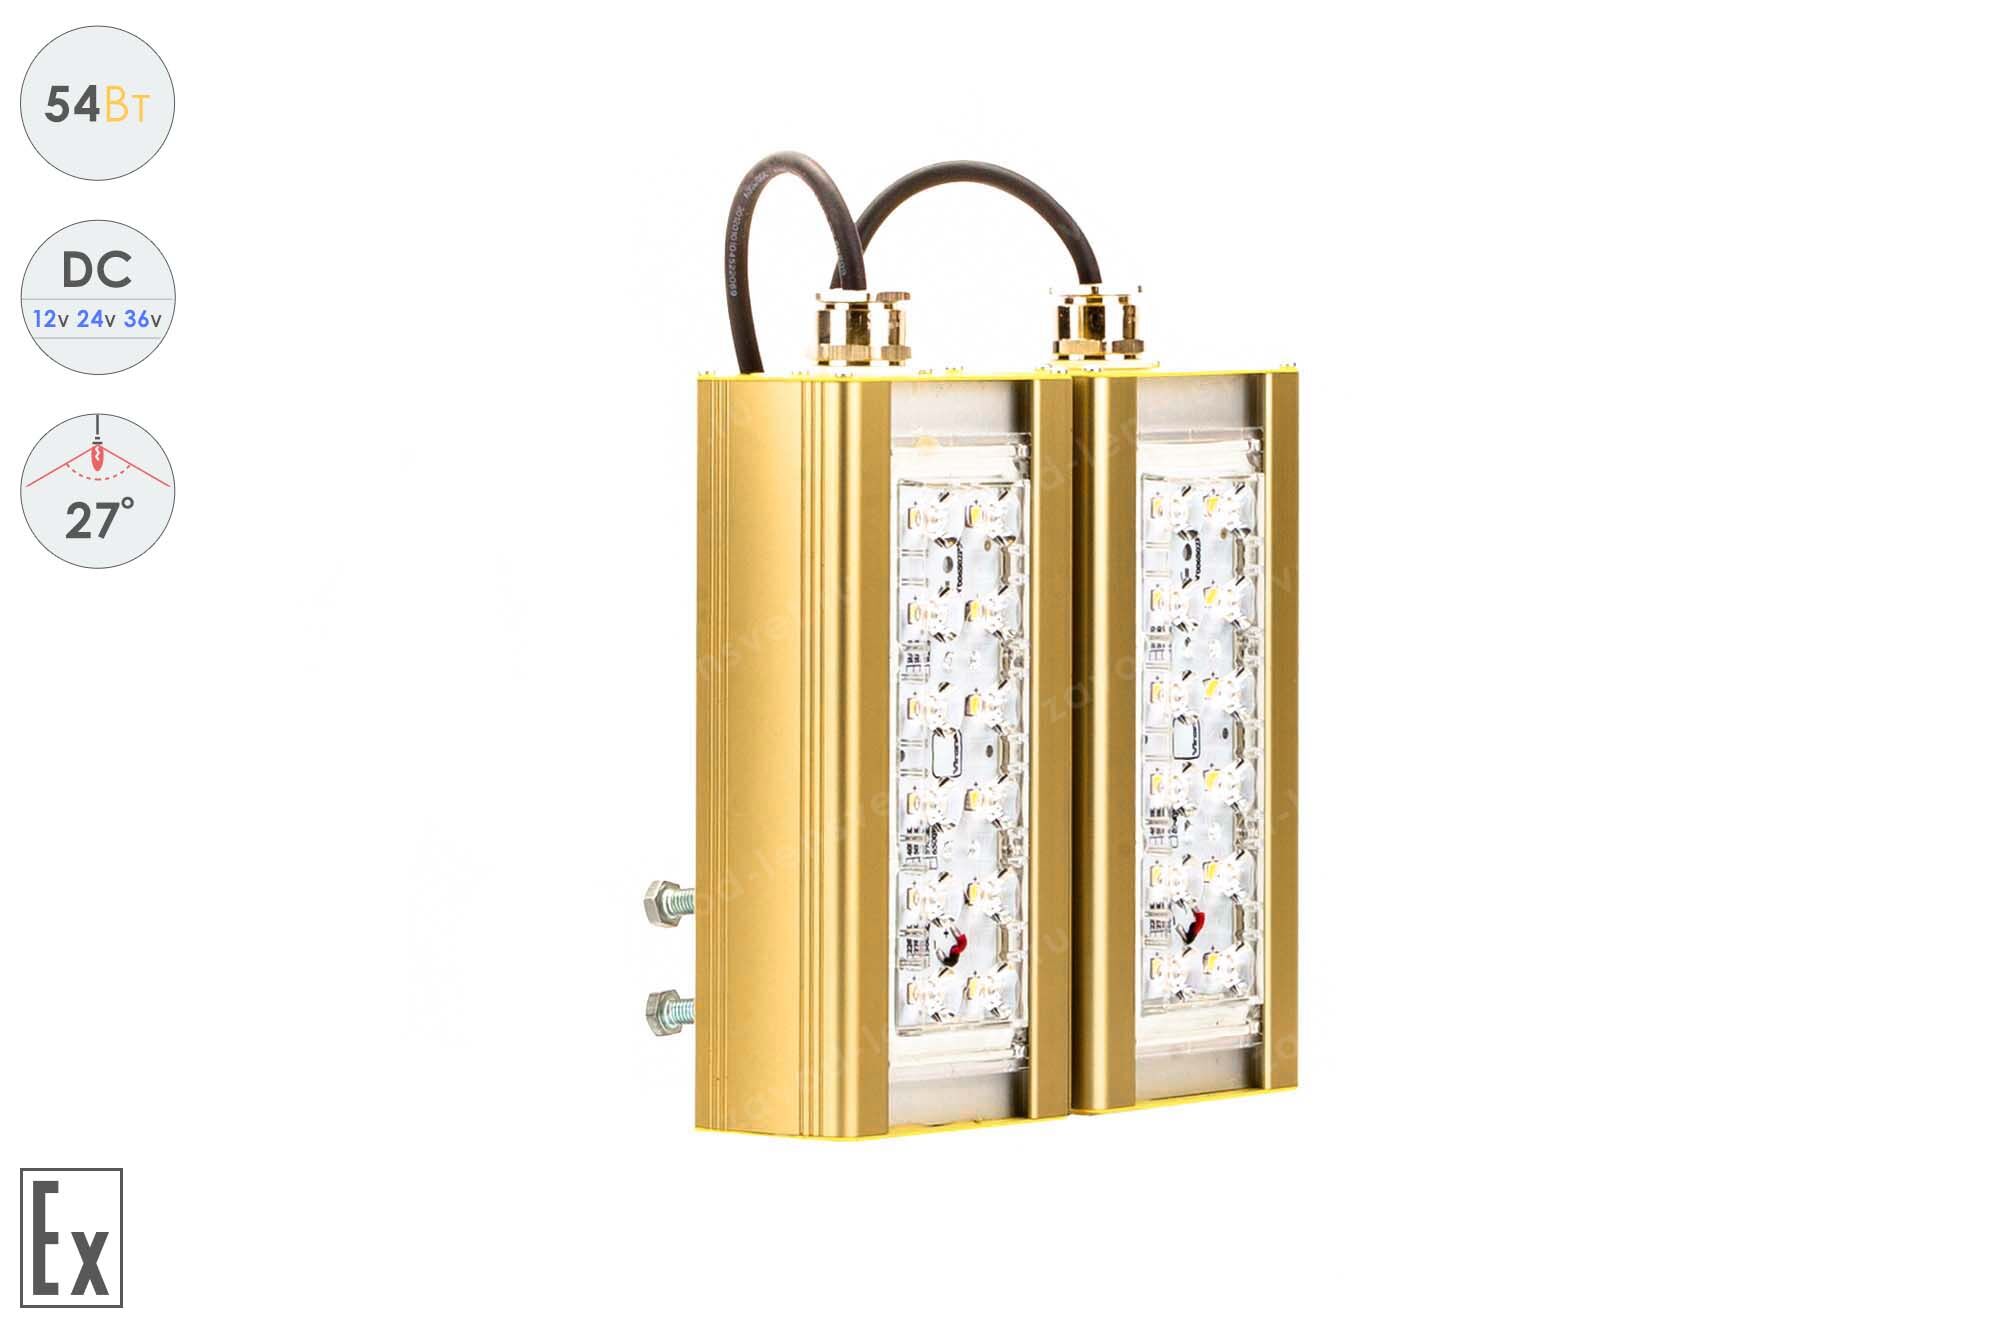 Светодиодный светильник Низковольтный Прожектор Взрывозащищенный GOLD, консоль K-2, 54 Вт, 27°